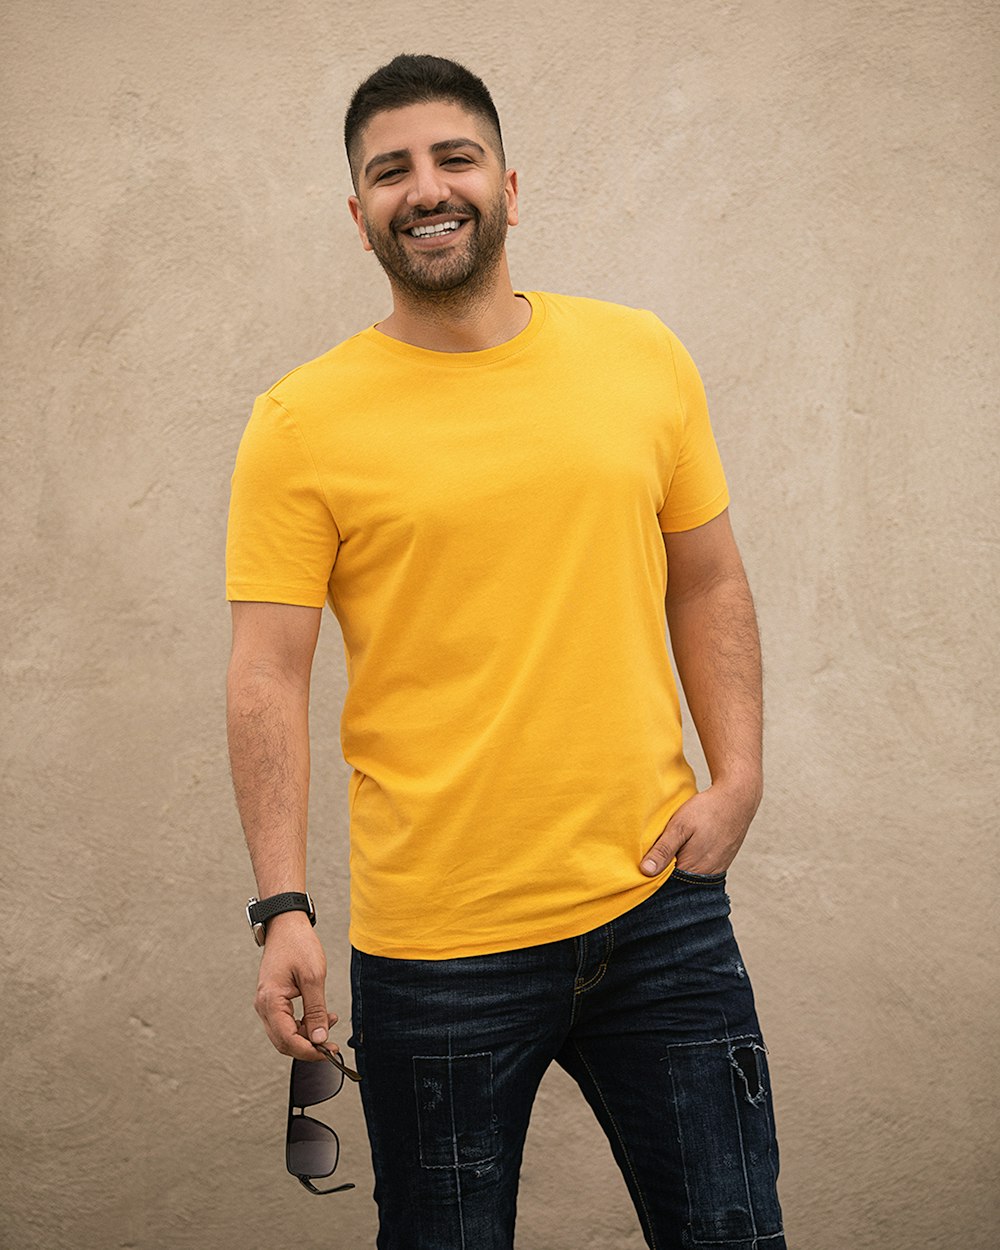 노란색 크루넥 티셔츠와 검은색 데님 청바지를 입은 남자가 흰 벽 옆에 서 있다